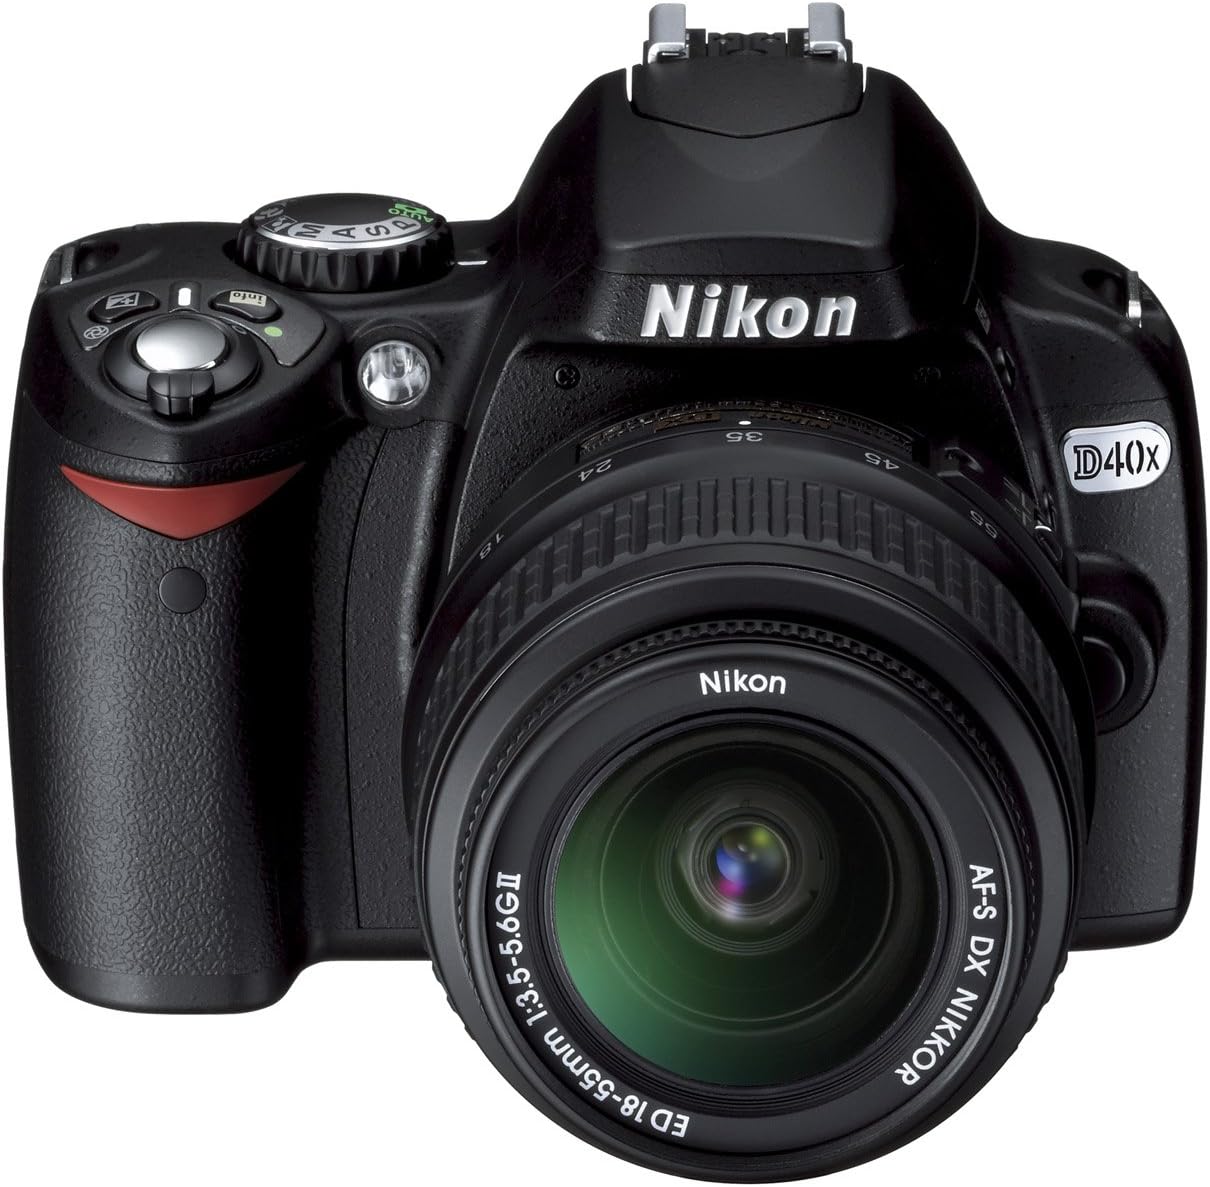 Nikon D40X Camera